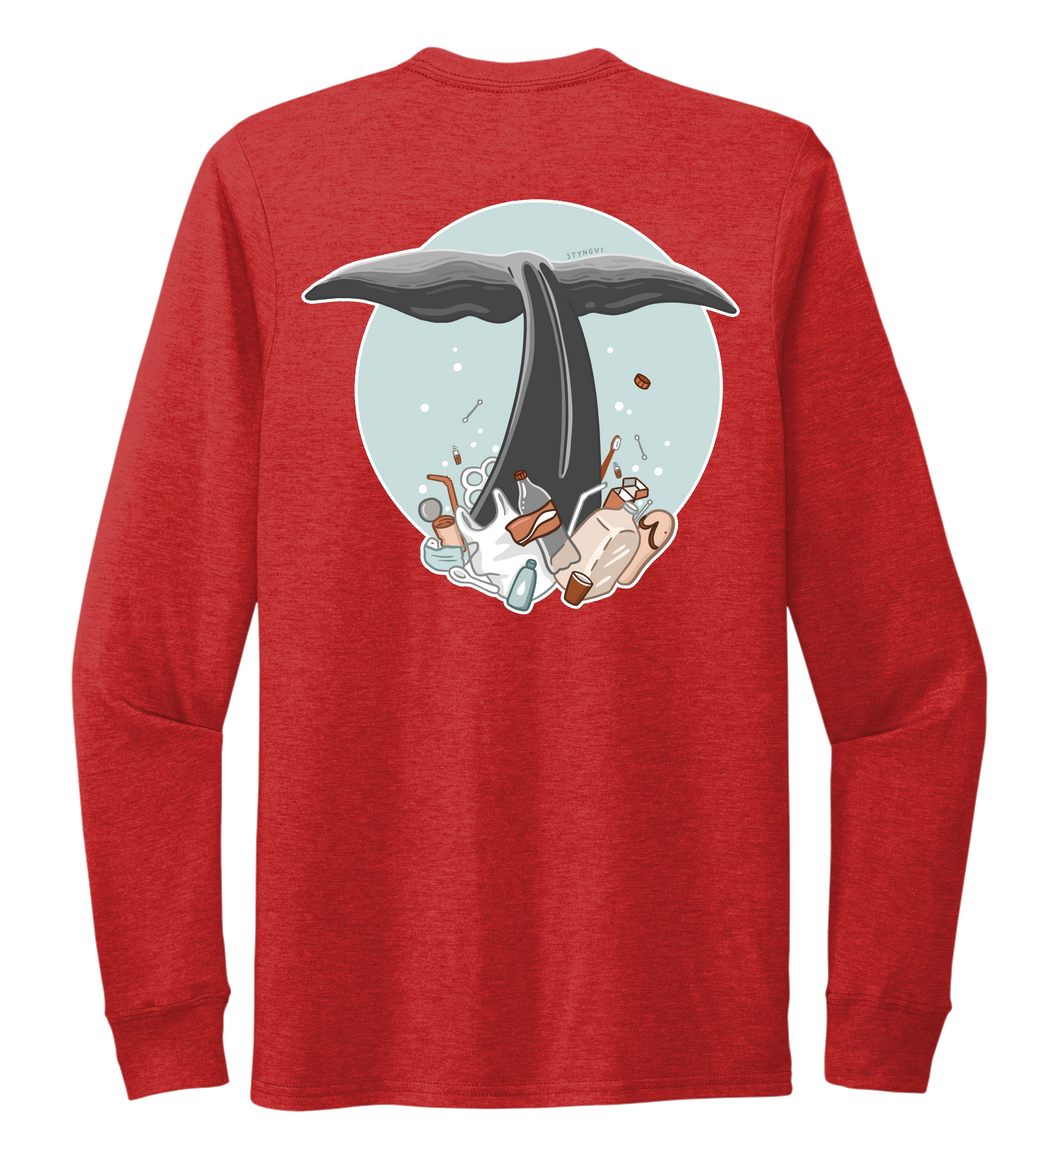 STYNGVI, Whale Fluke (colored), Unisex Crew Neck Long Sleeve T-shirt in Bravo Red